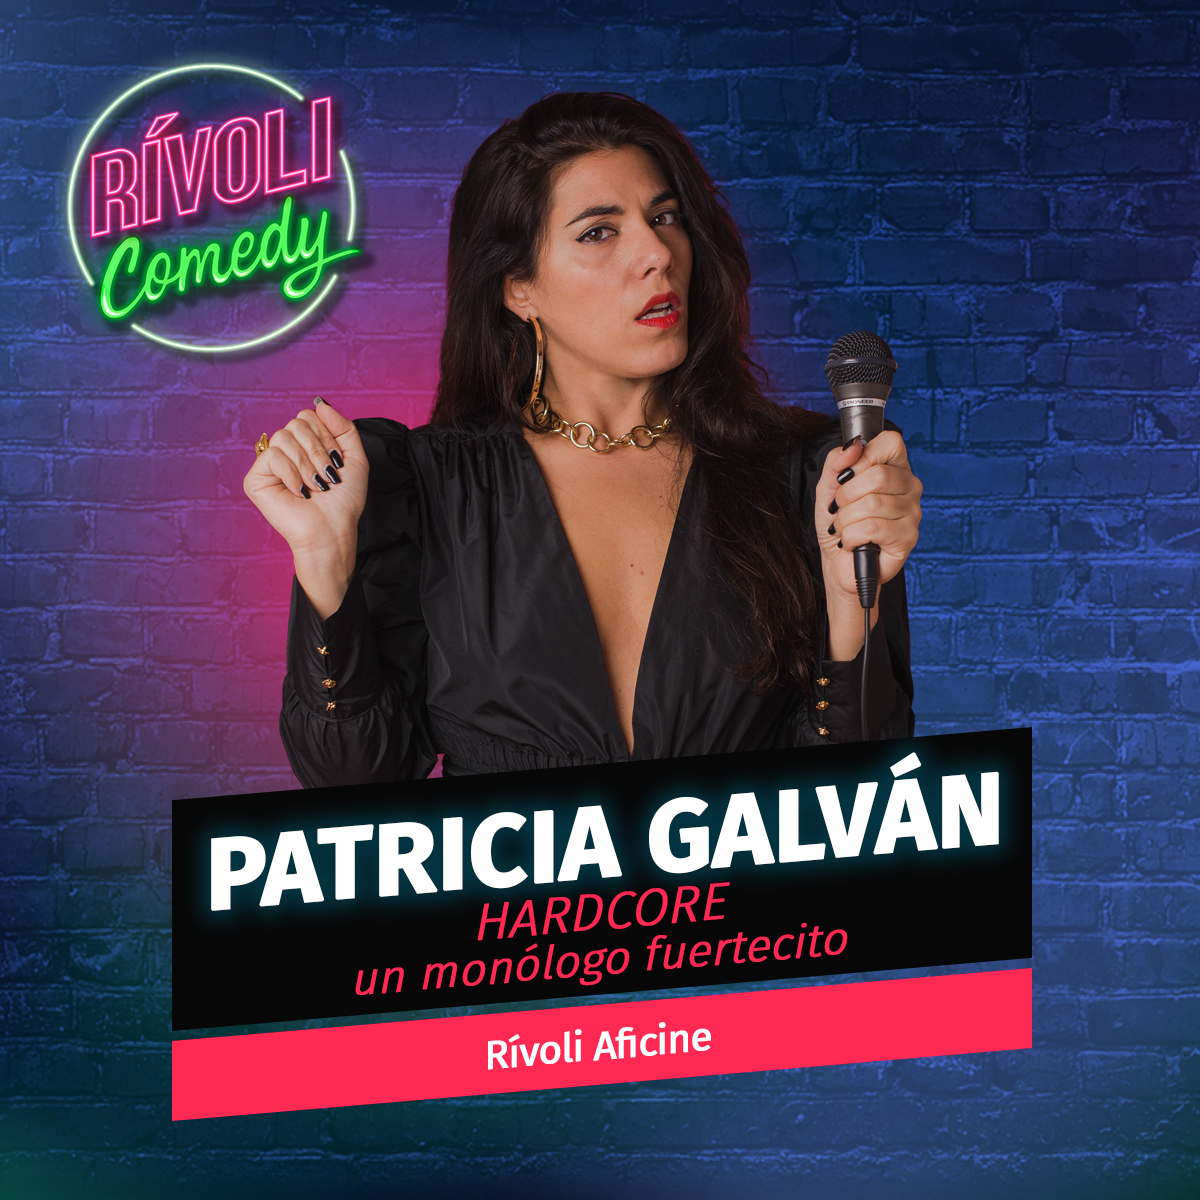 Patricia Galván | Hardcore · 13 de enero · Palma de Mallorca (Rívoli Comedy)